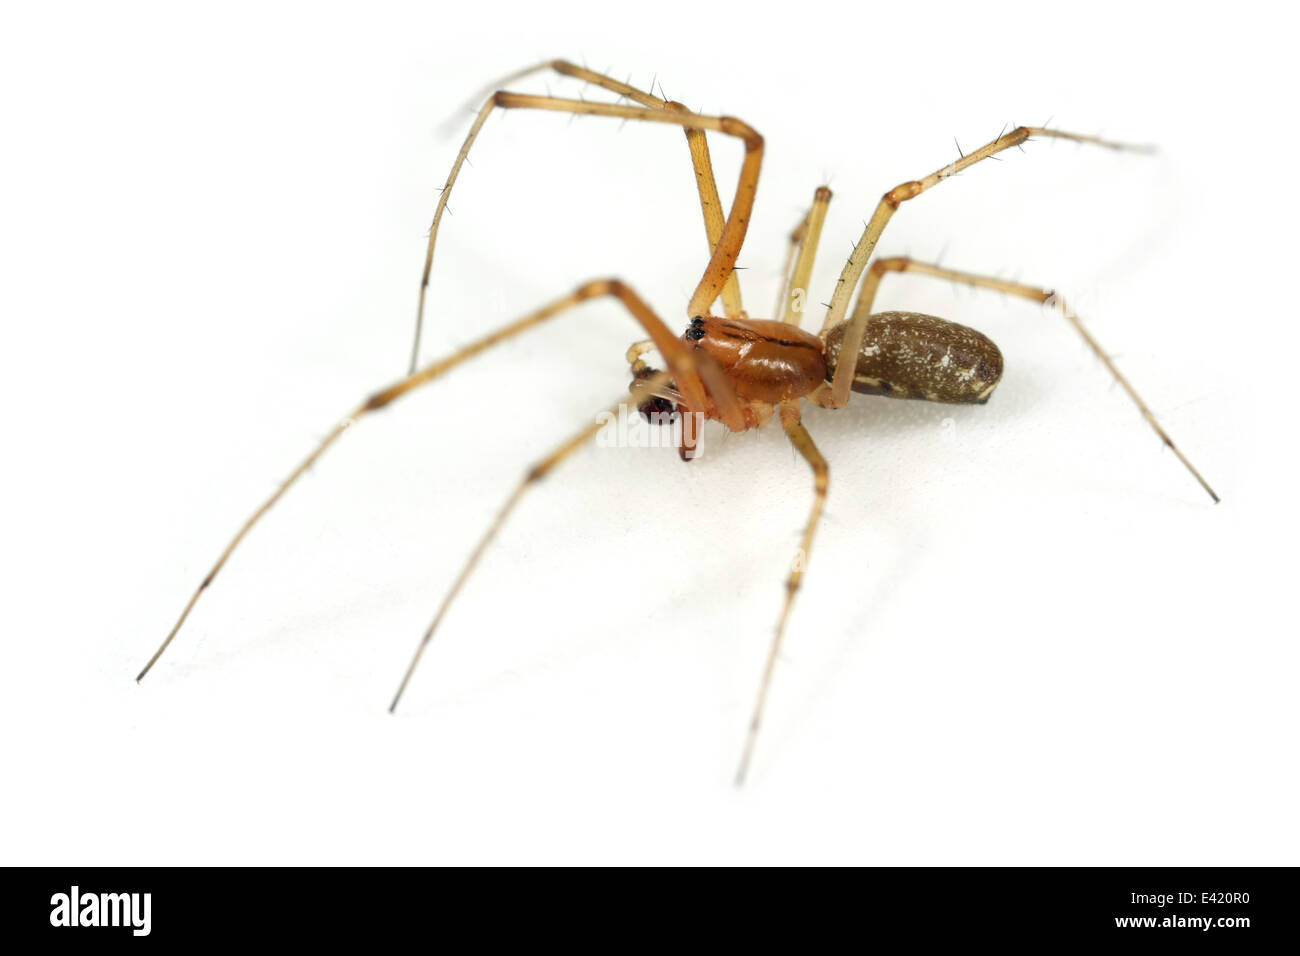 Maschio amaca comune-weaver (Linyphia triangularis) spider, parte della famiglia Linyphiidae - Sheetweb tessitori. Isolato su bianco. Foto Stock